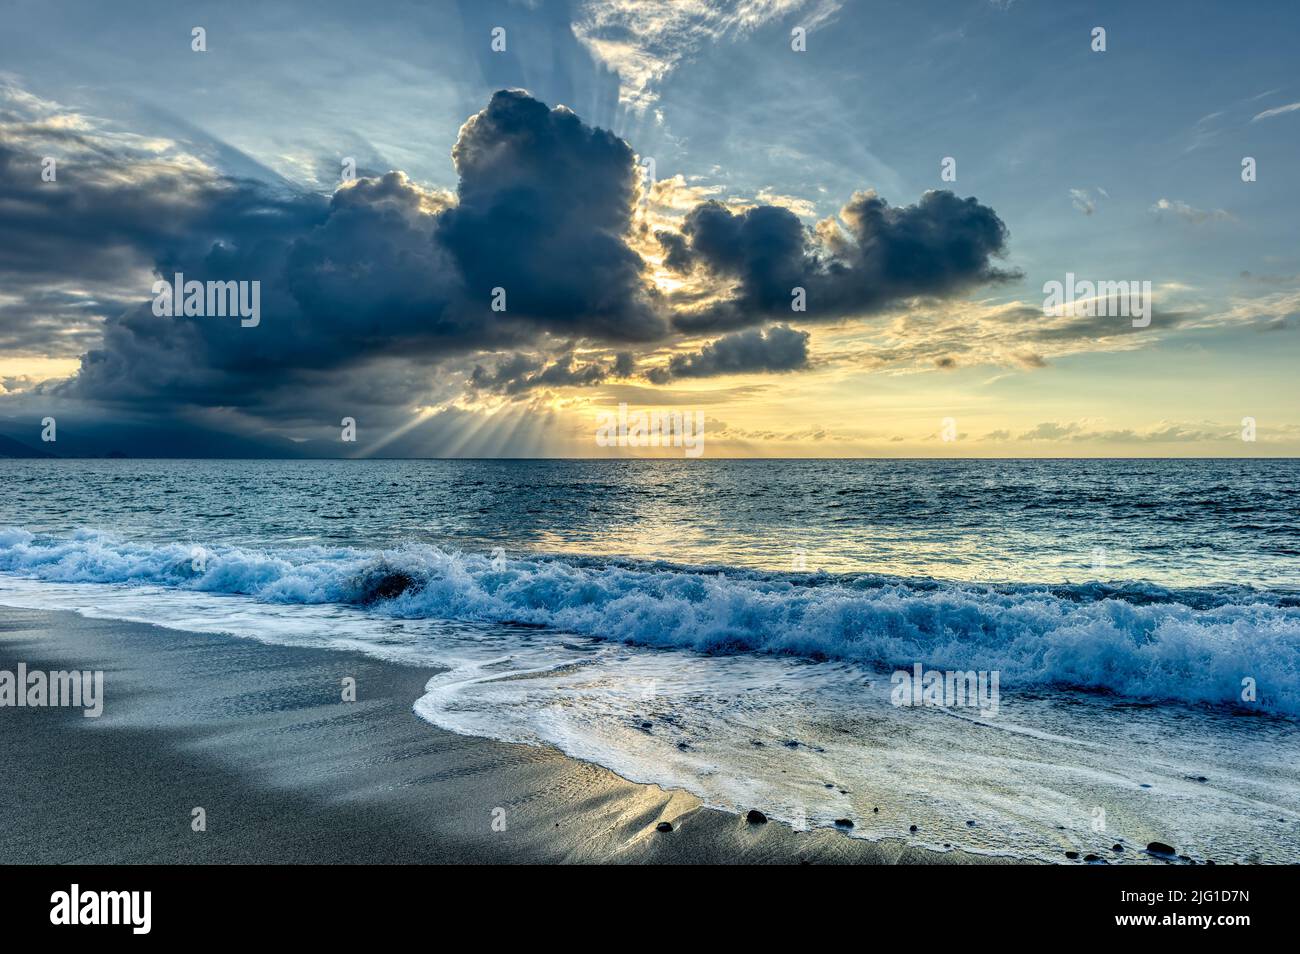 Los brillantes rayos del sol están reventando a través de las nubes en un paisaje al atardecer en el océano Foto de stock